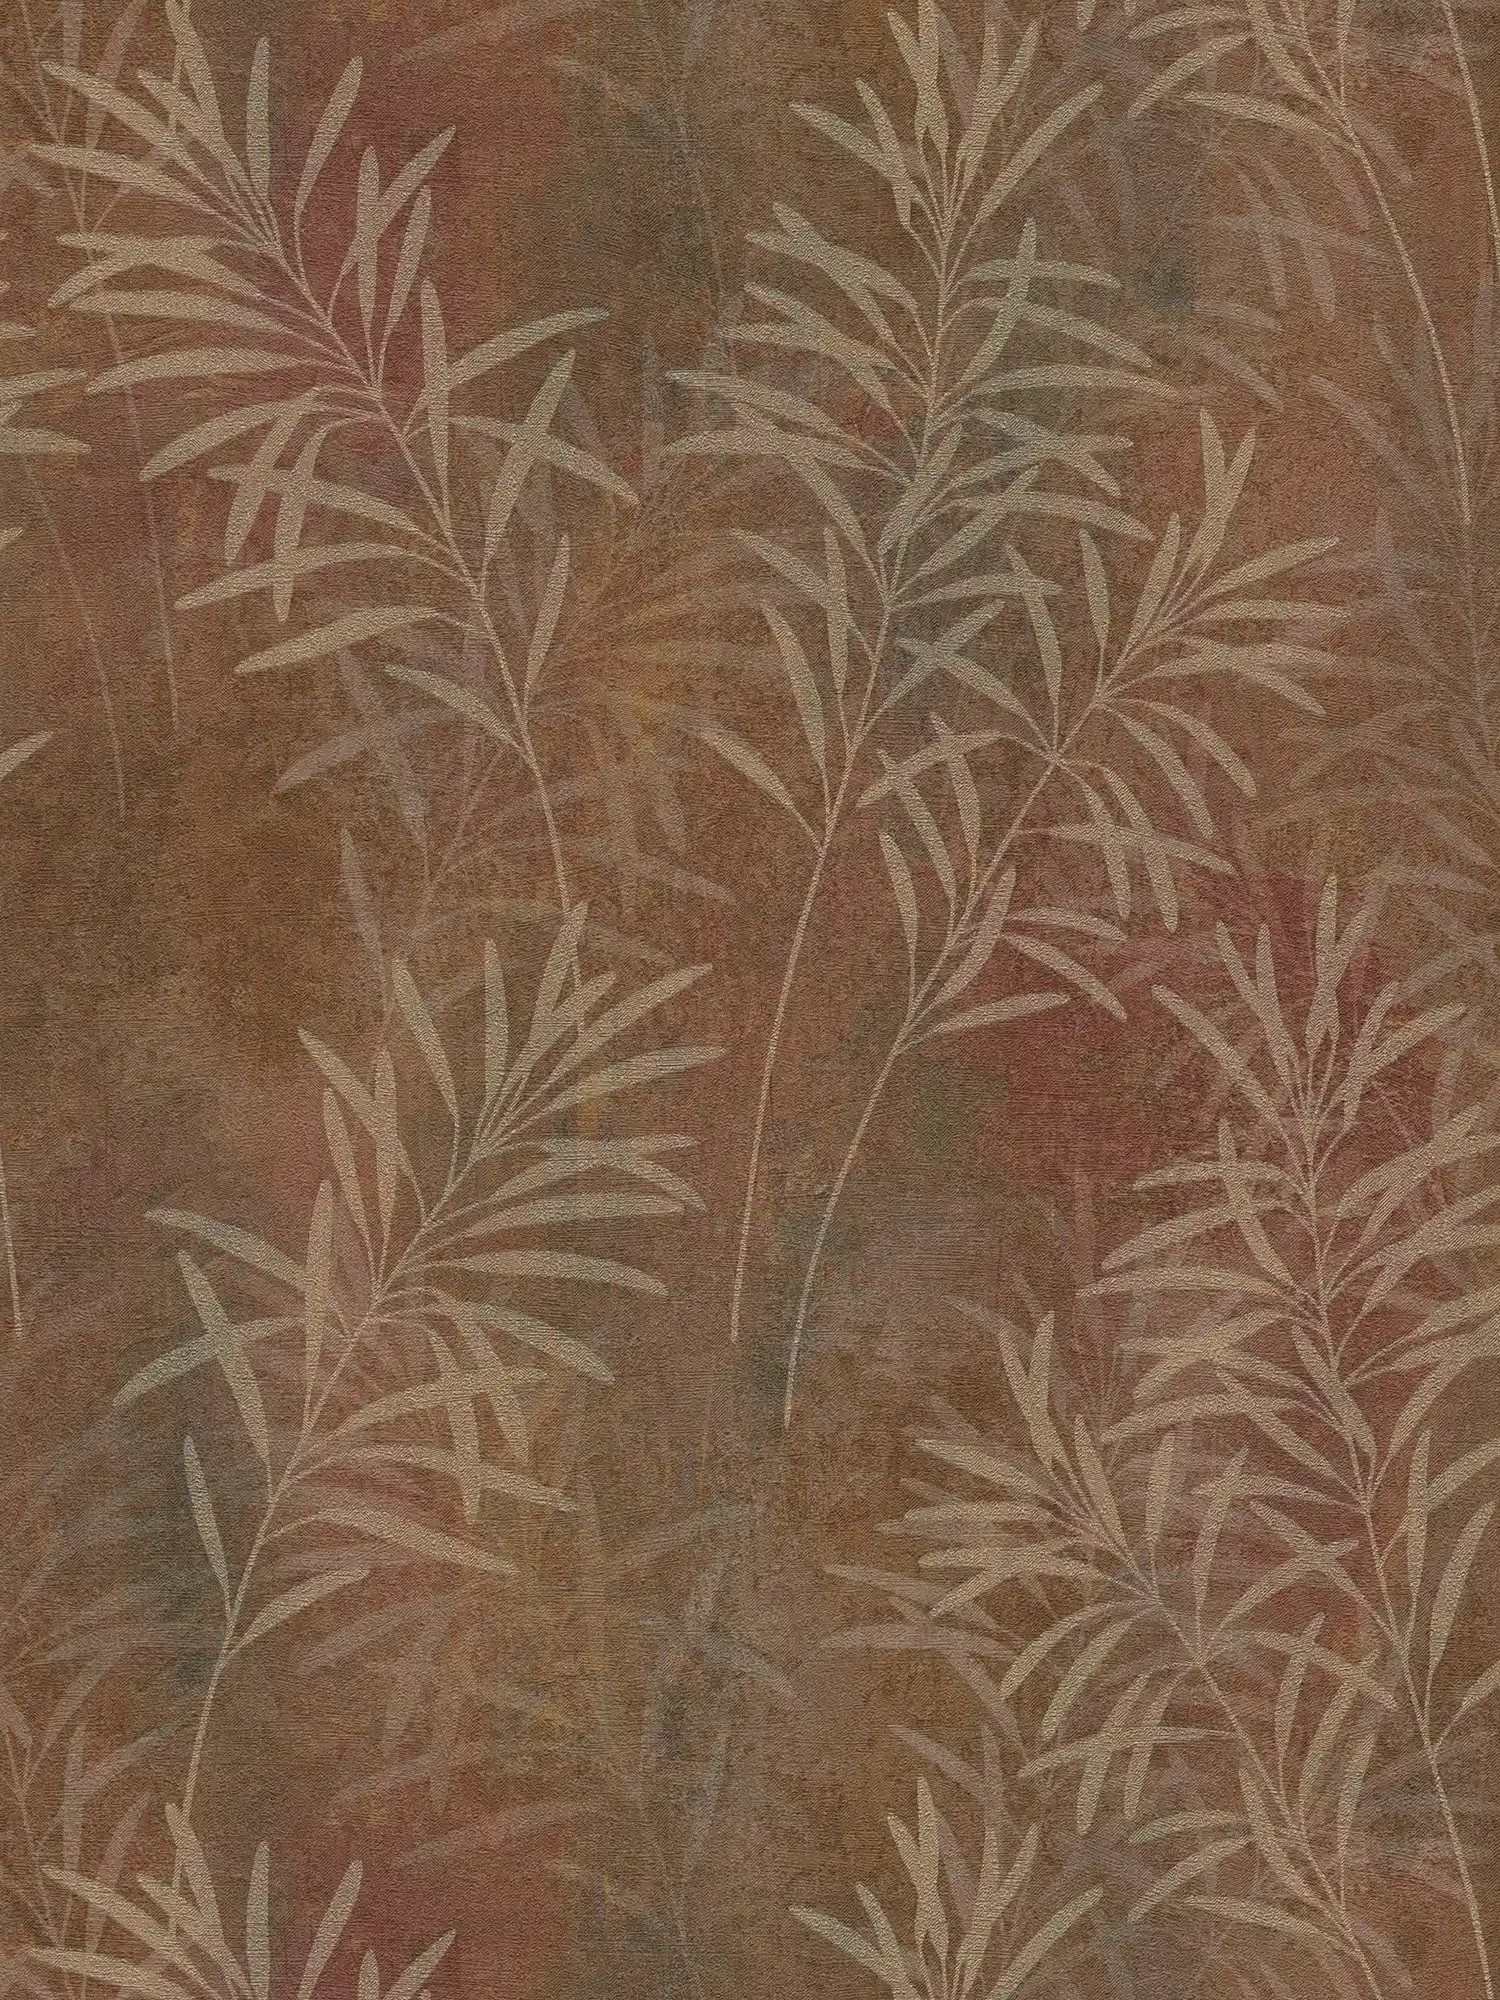         Florale Vliestapete mit Gräser-Muster und feiner Struktur – Braun, Beige, Metallic
    